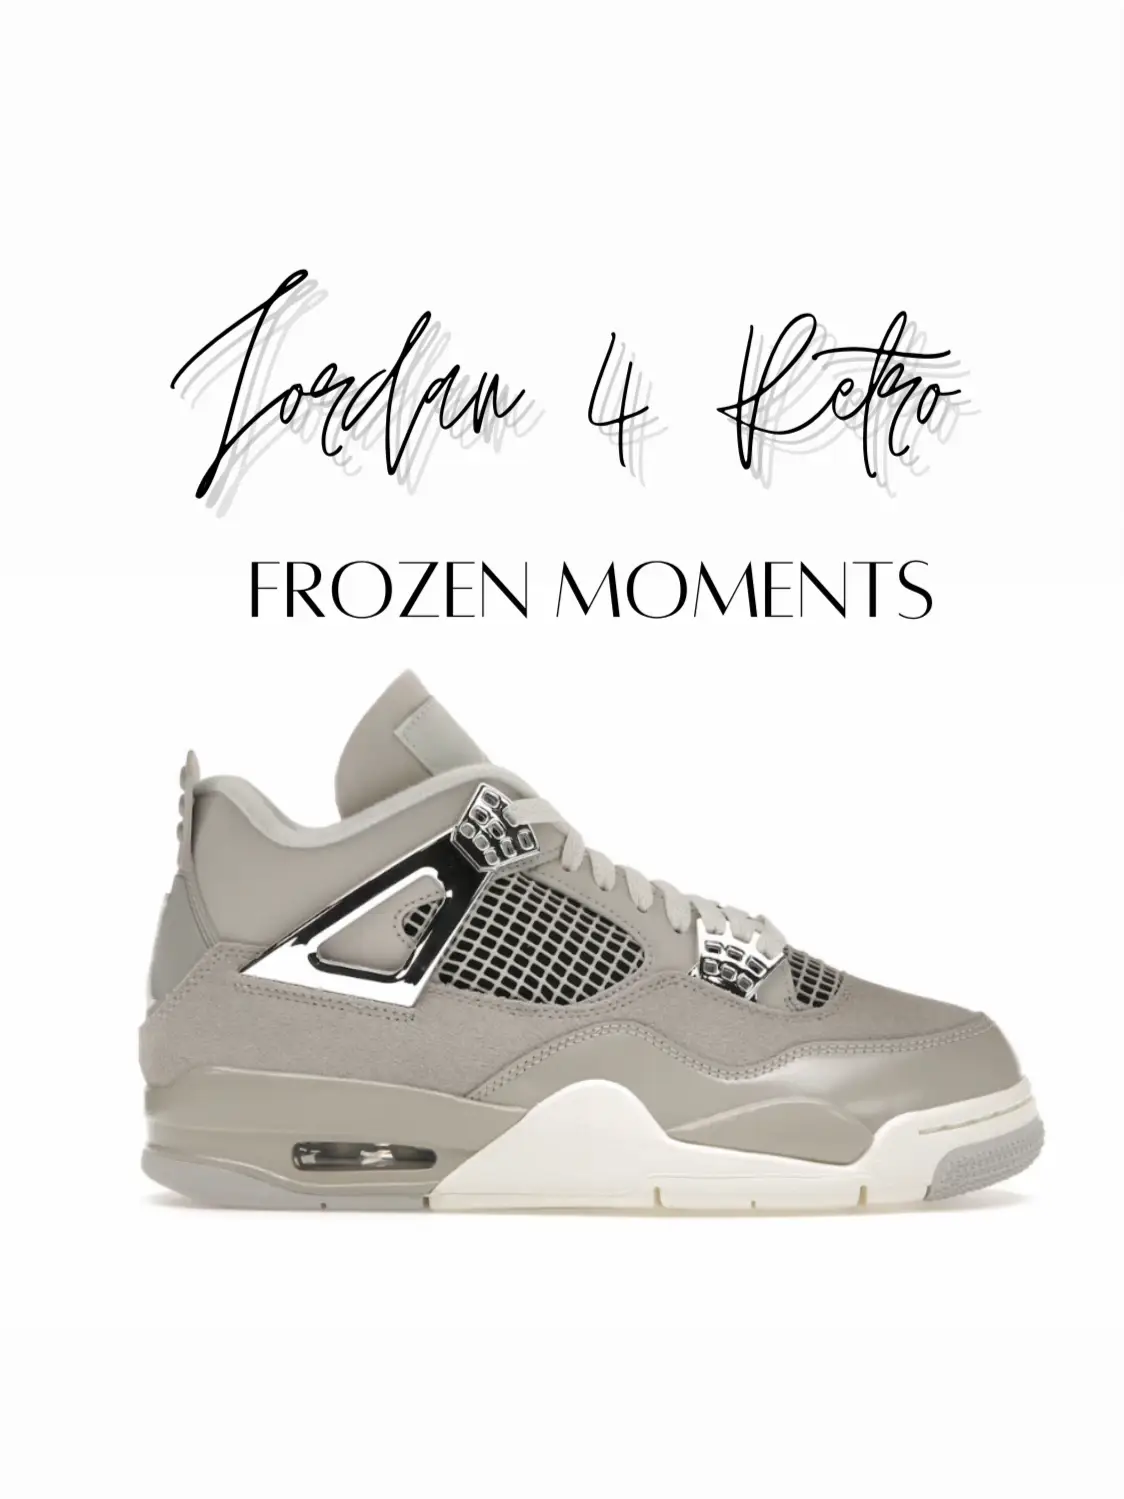 Air Jordan 4 Retro 'Frozen Moments' WMNS – Origin Kicks